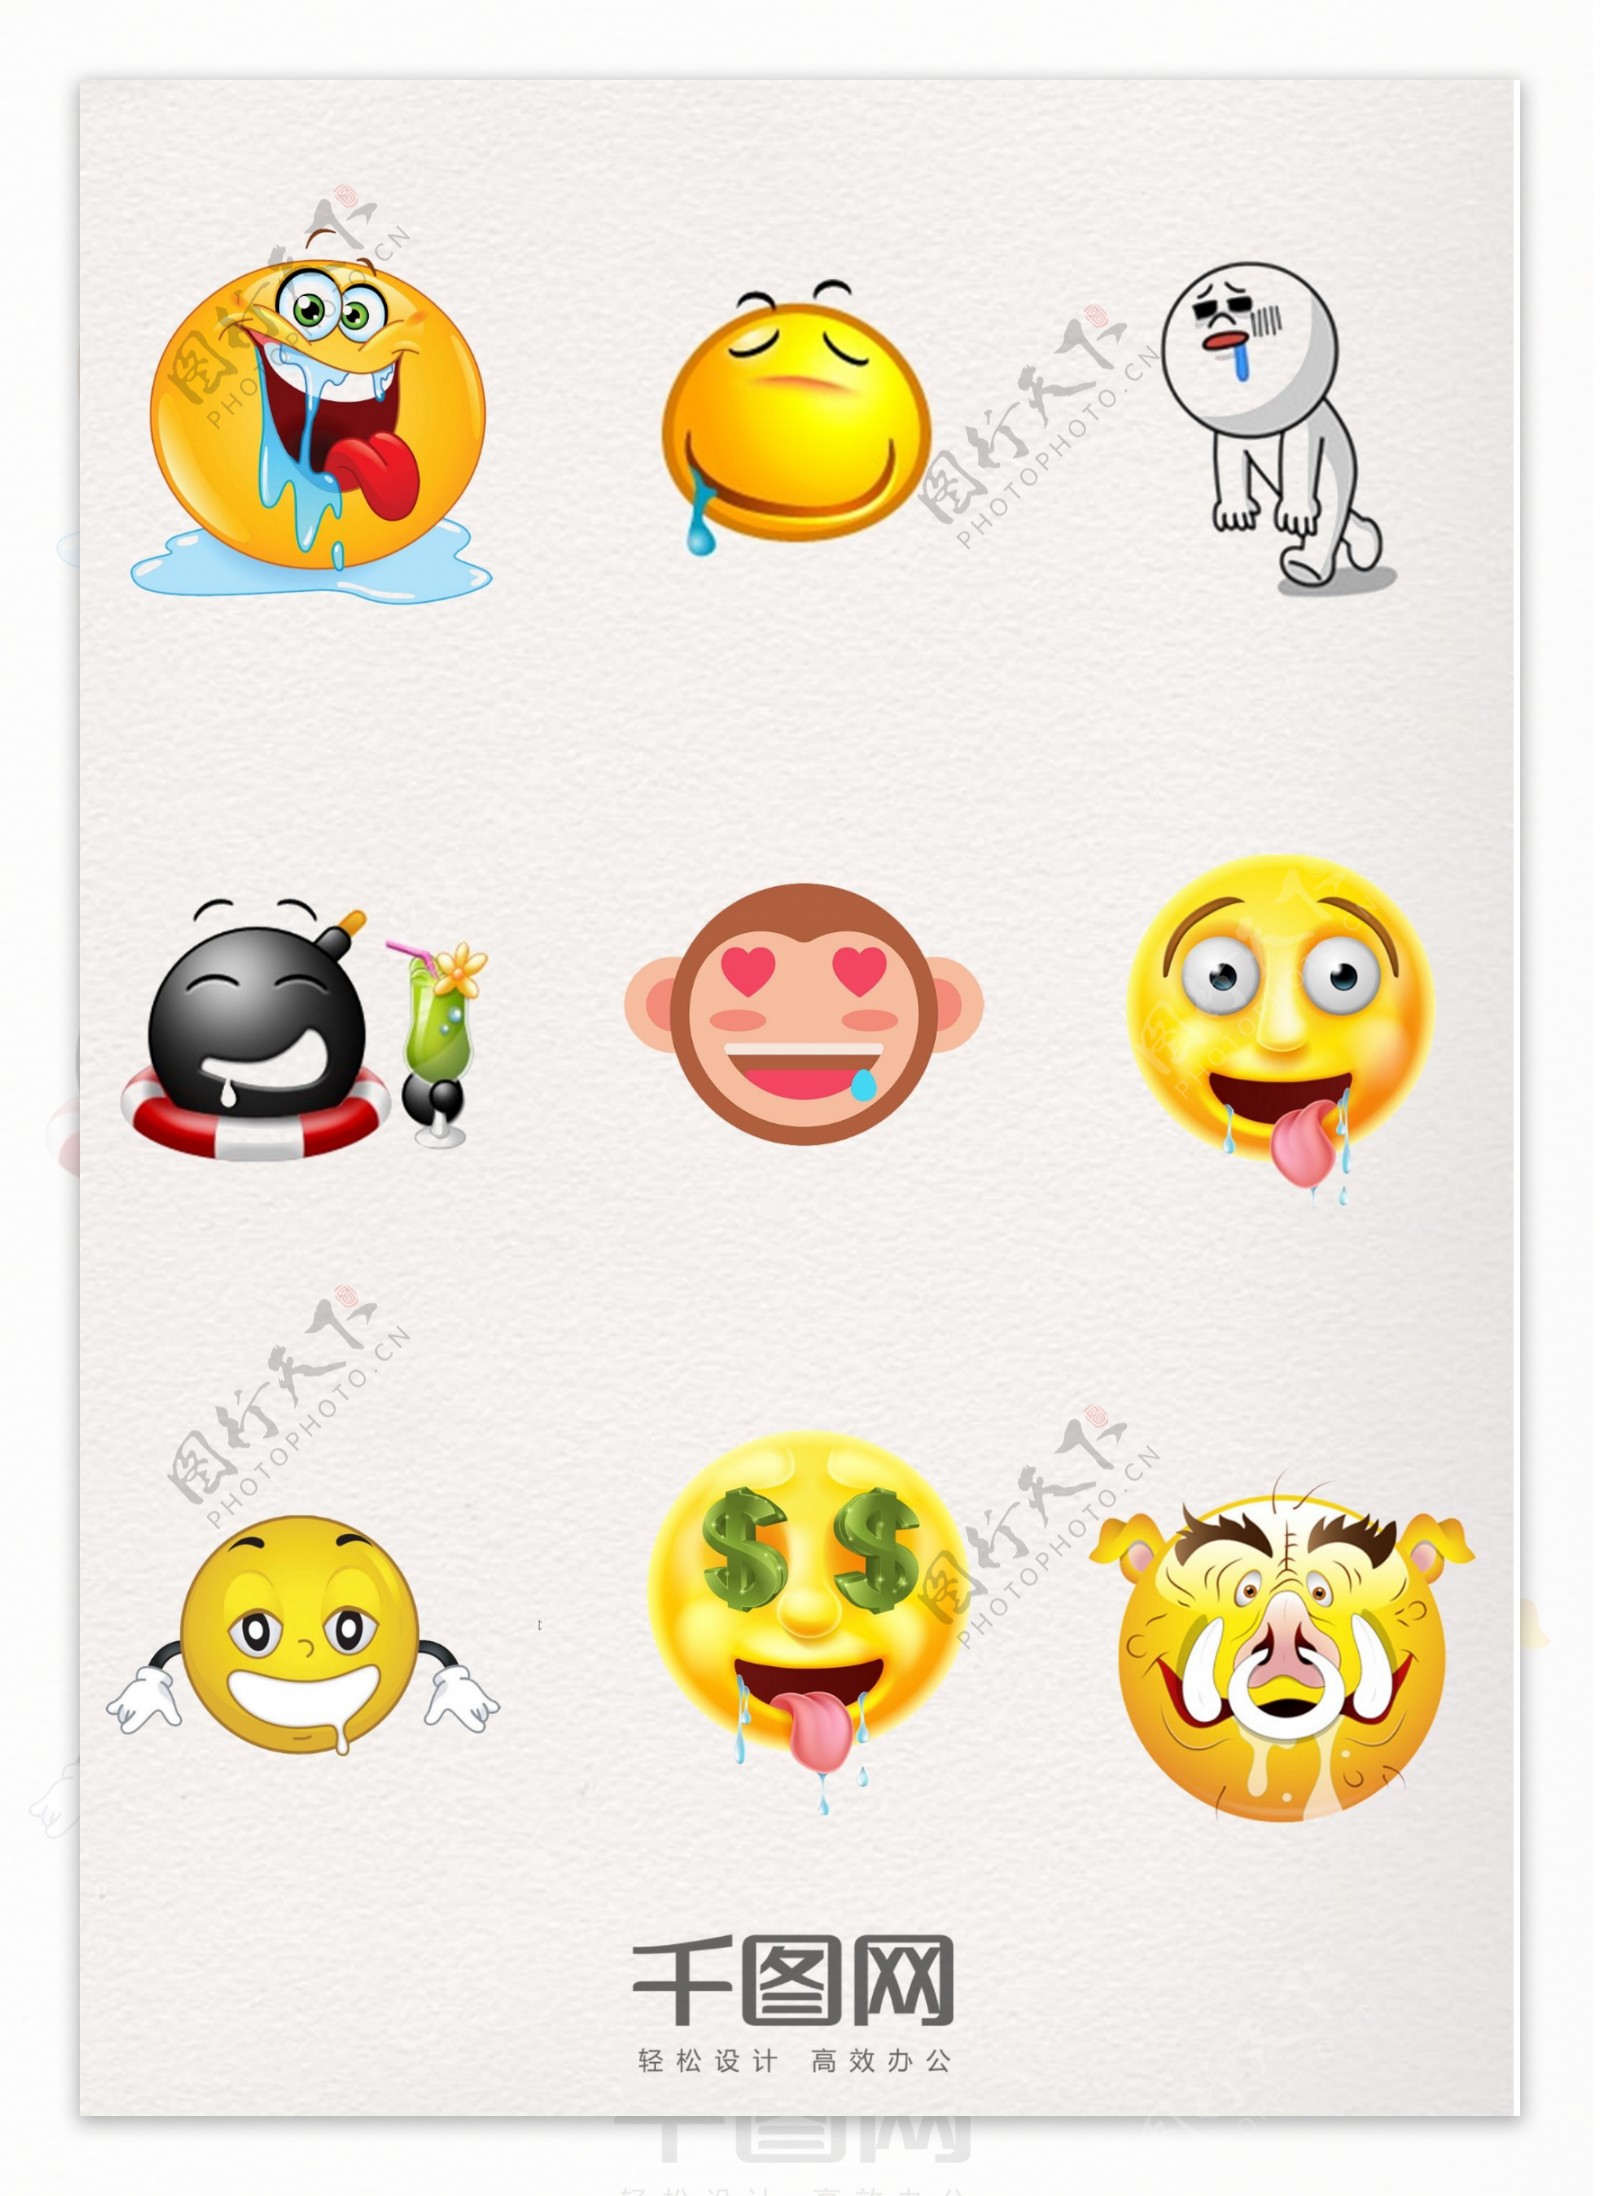 🤤 流口水 Emoji图片下载: 高清大图、动画图像和矢量图形 | EmojiAll